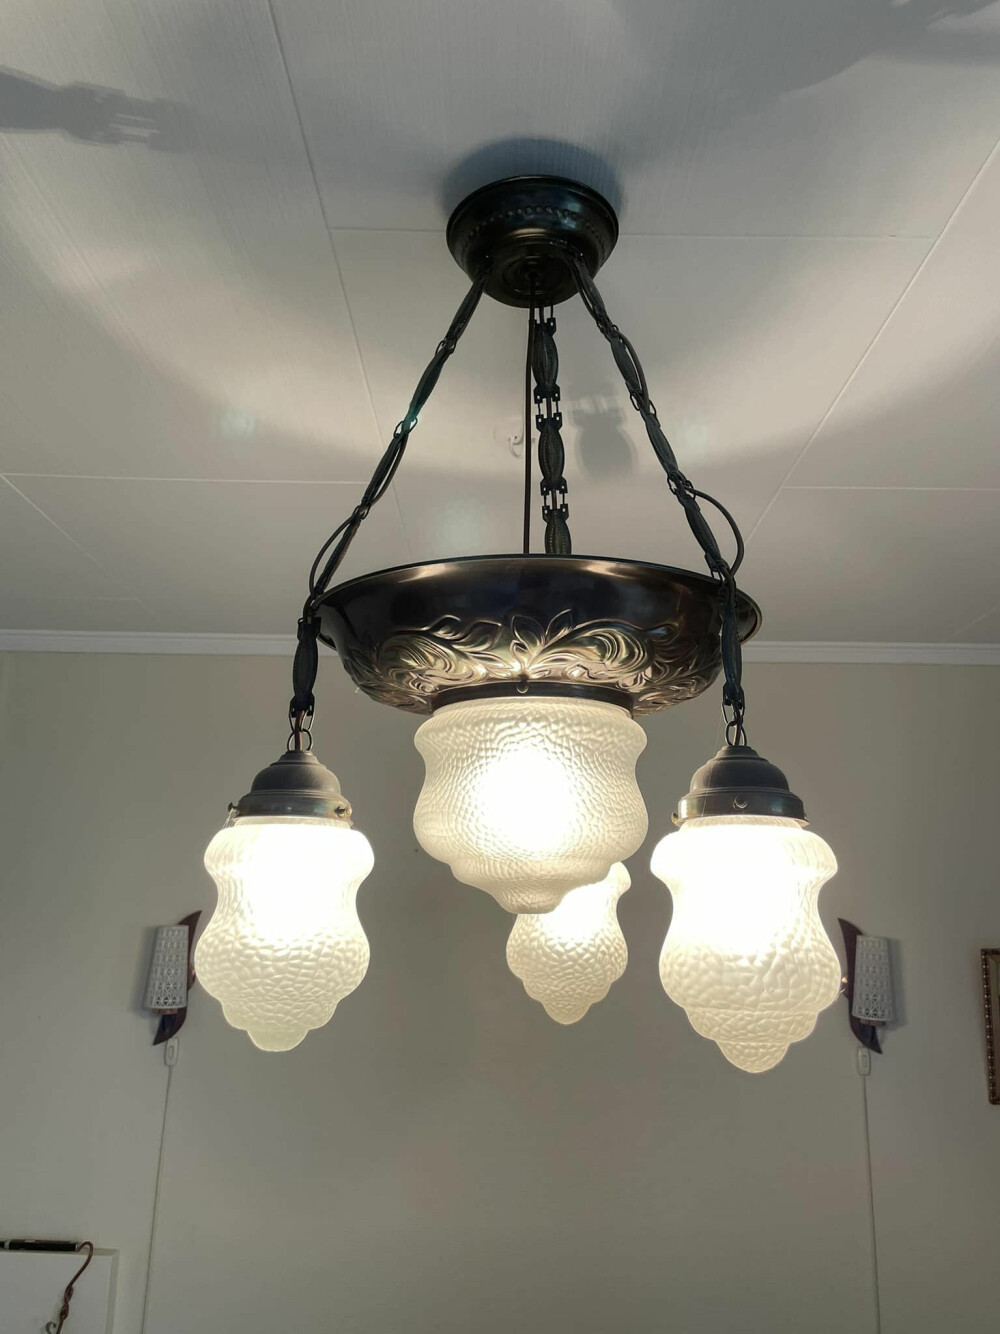 <b>STILIG LYS:</b> En elegant taklampe løfter ethvert interiør, og når den i tillegg gir godt lys er det bare å slå til. Taklampe fra 1930-tallet, kr 2300 fra Nidaros brukt og antikk. nidarosbrukt.com